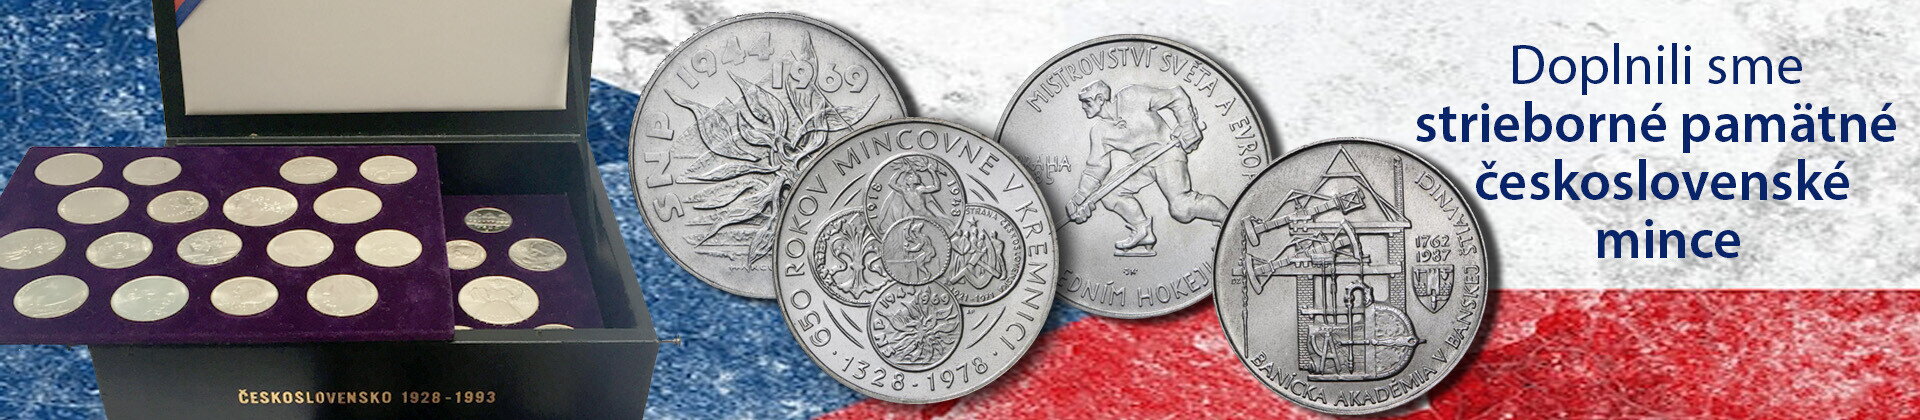 československé pamätné mince